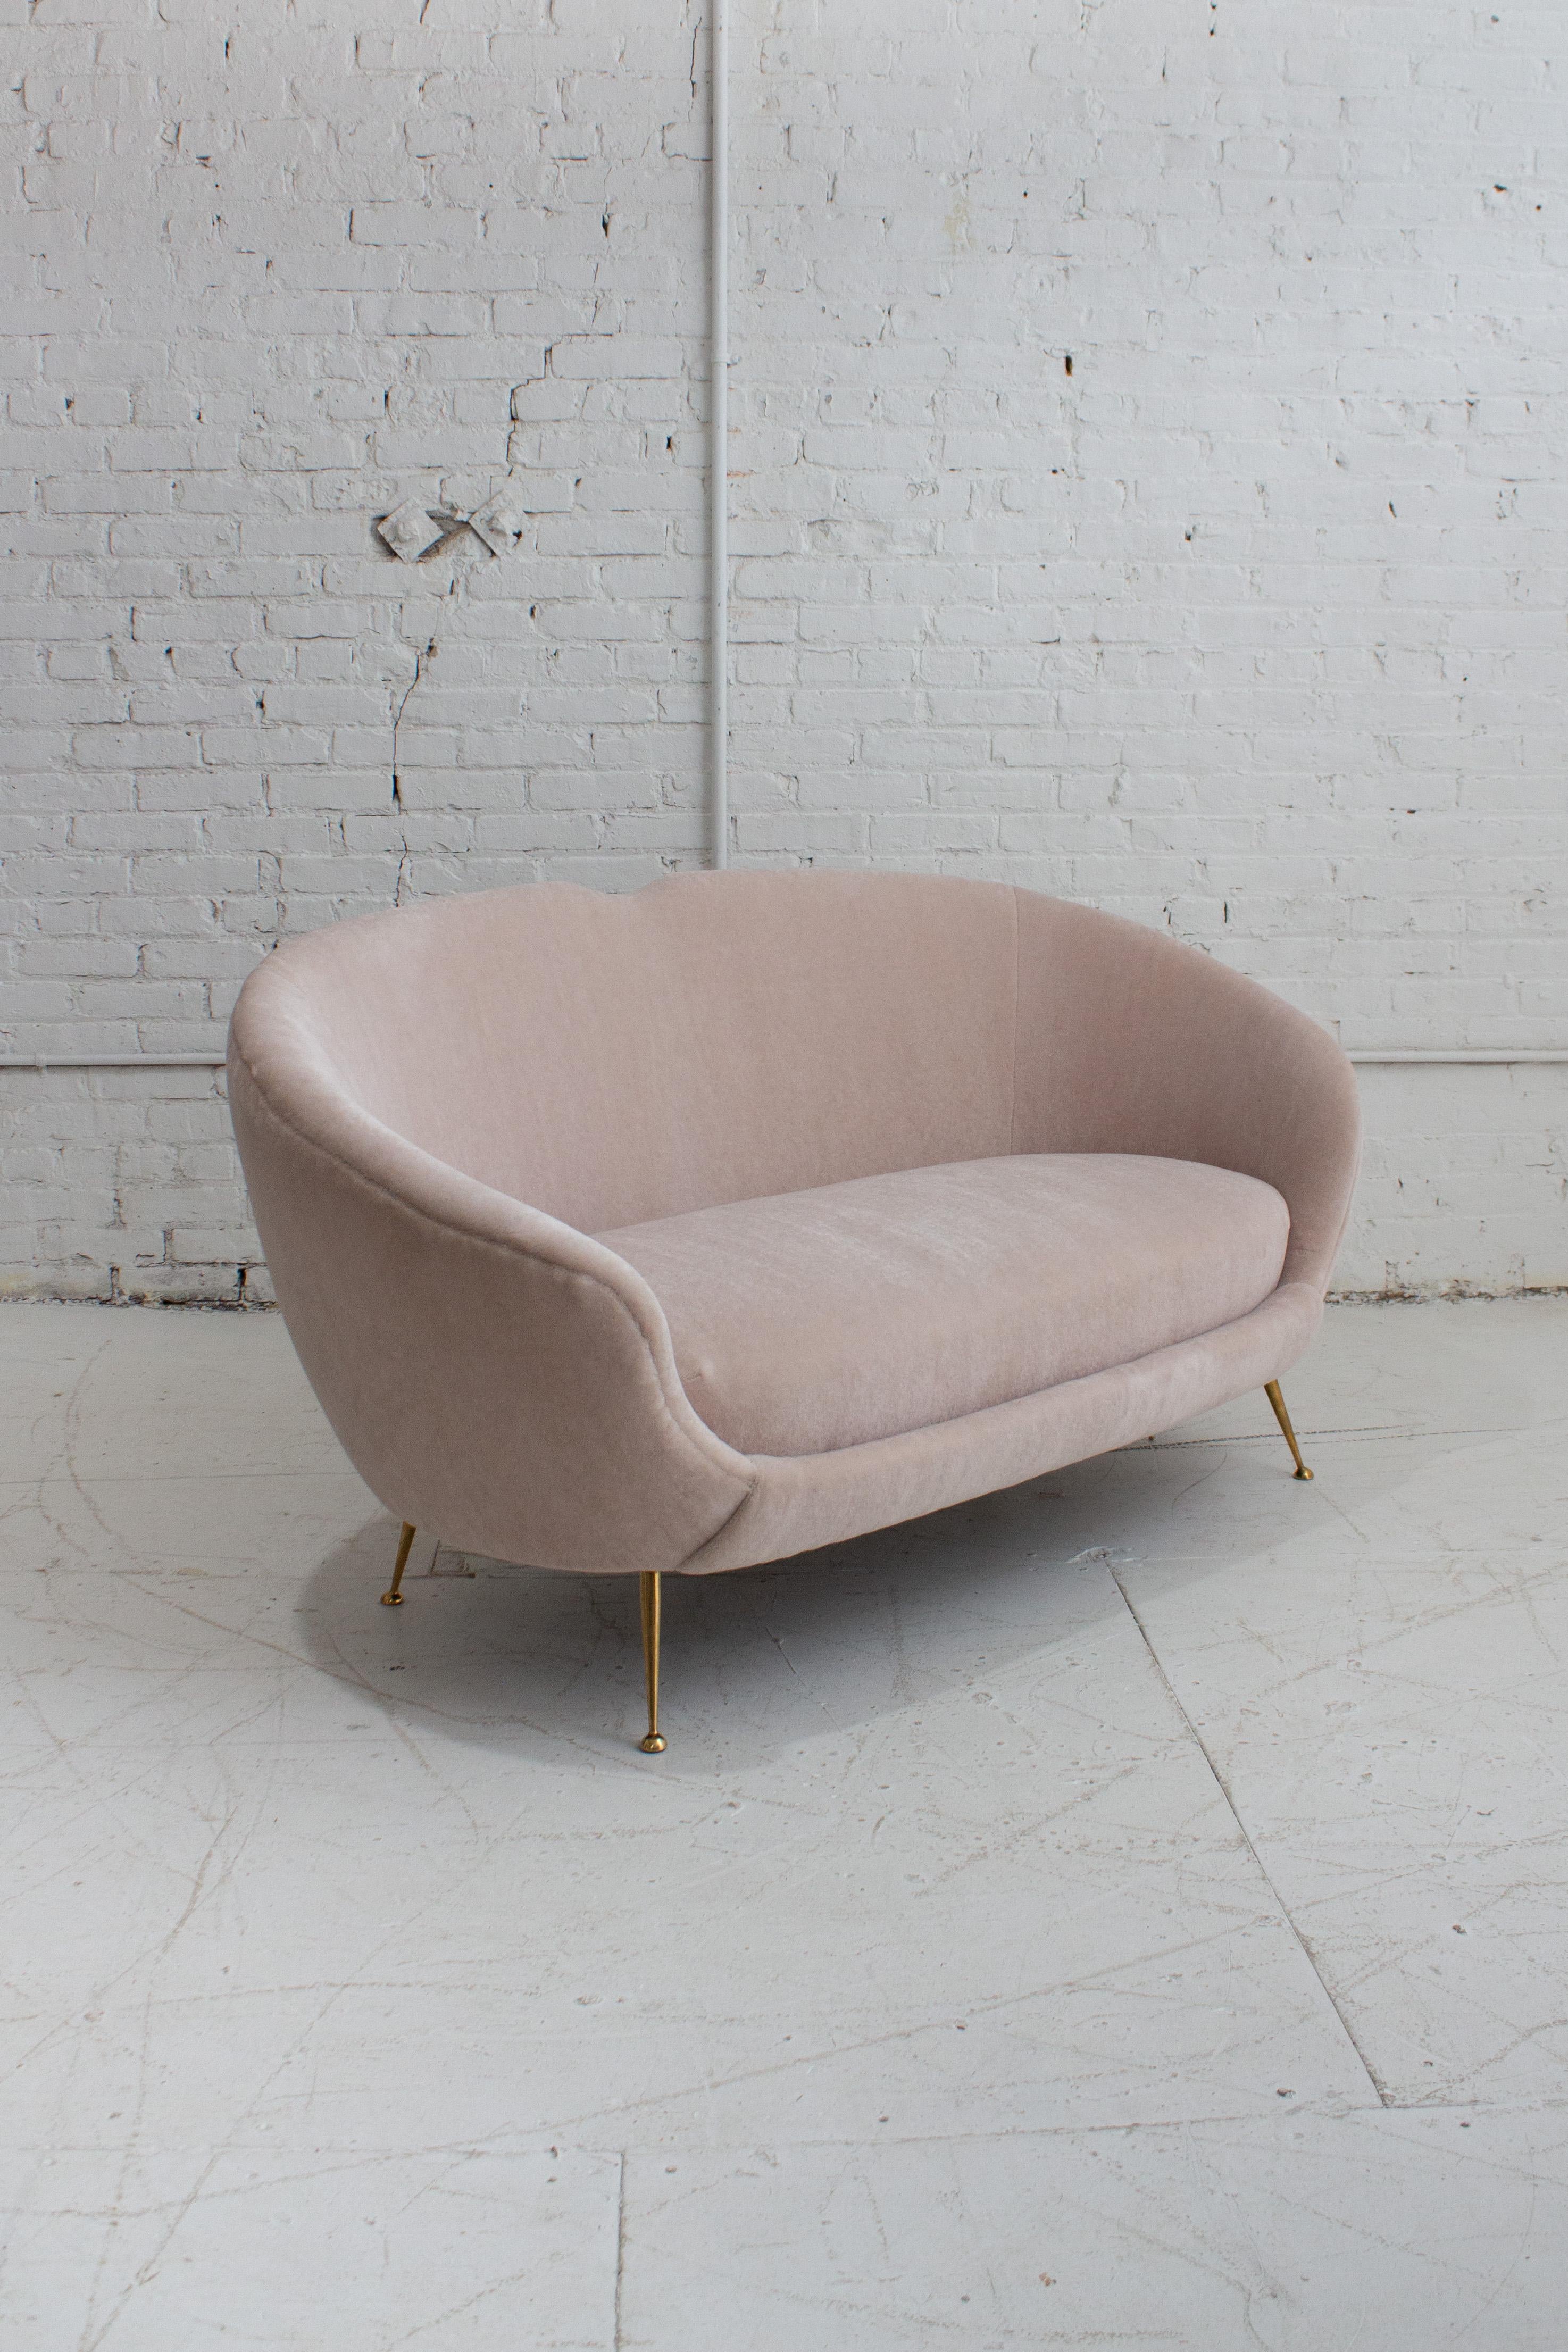 Ein italienisches Sofa oder Liegesofa aus den 1950er Jahren, das ISA Bergamo zugeschrieben wird. Neu gepolstert mit hochwertigem Luxus-Mohair. Ein weicher, hochfloriger Stoff mit einer Farbe, die je nach Lichteinfall sowohl cremig-neutral als auch